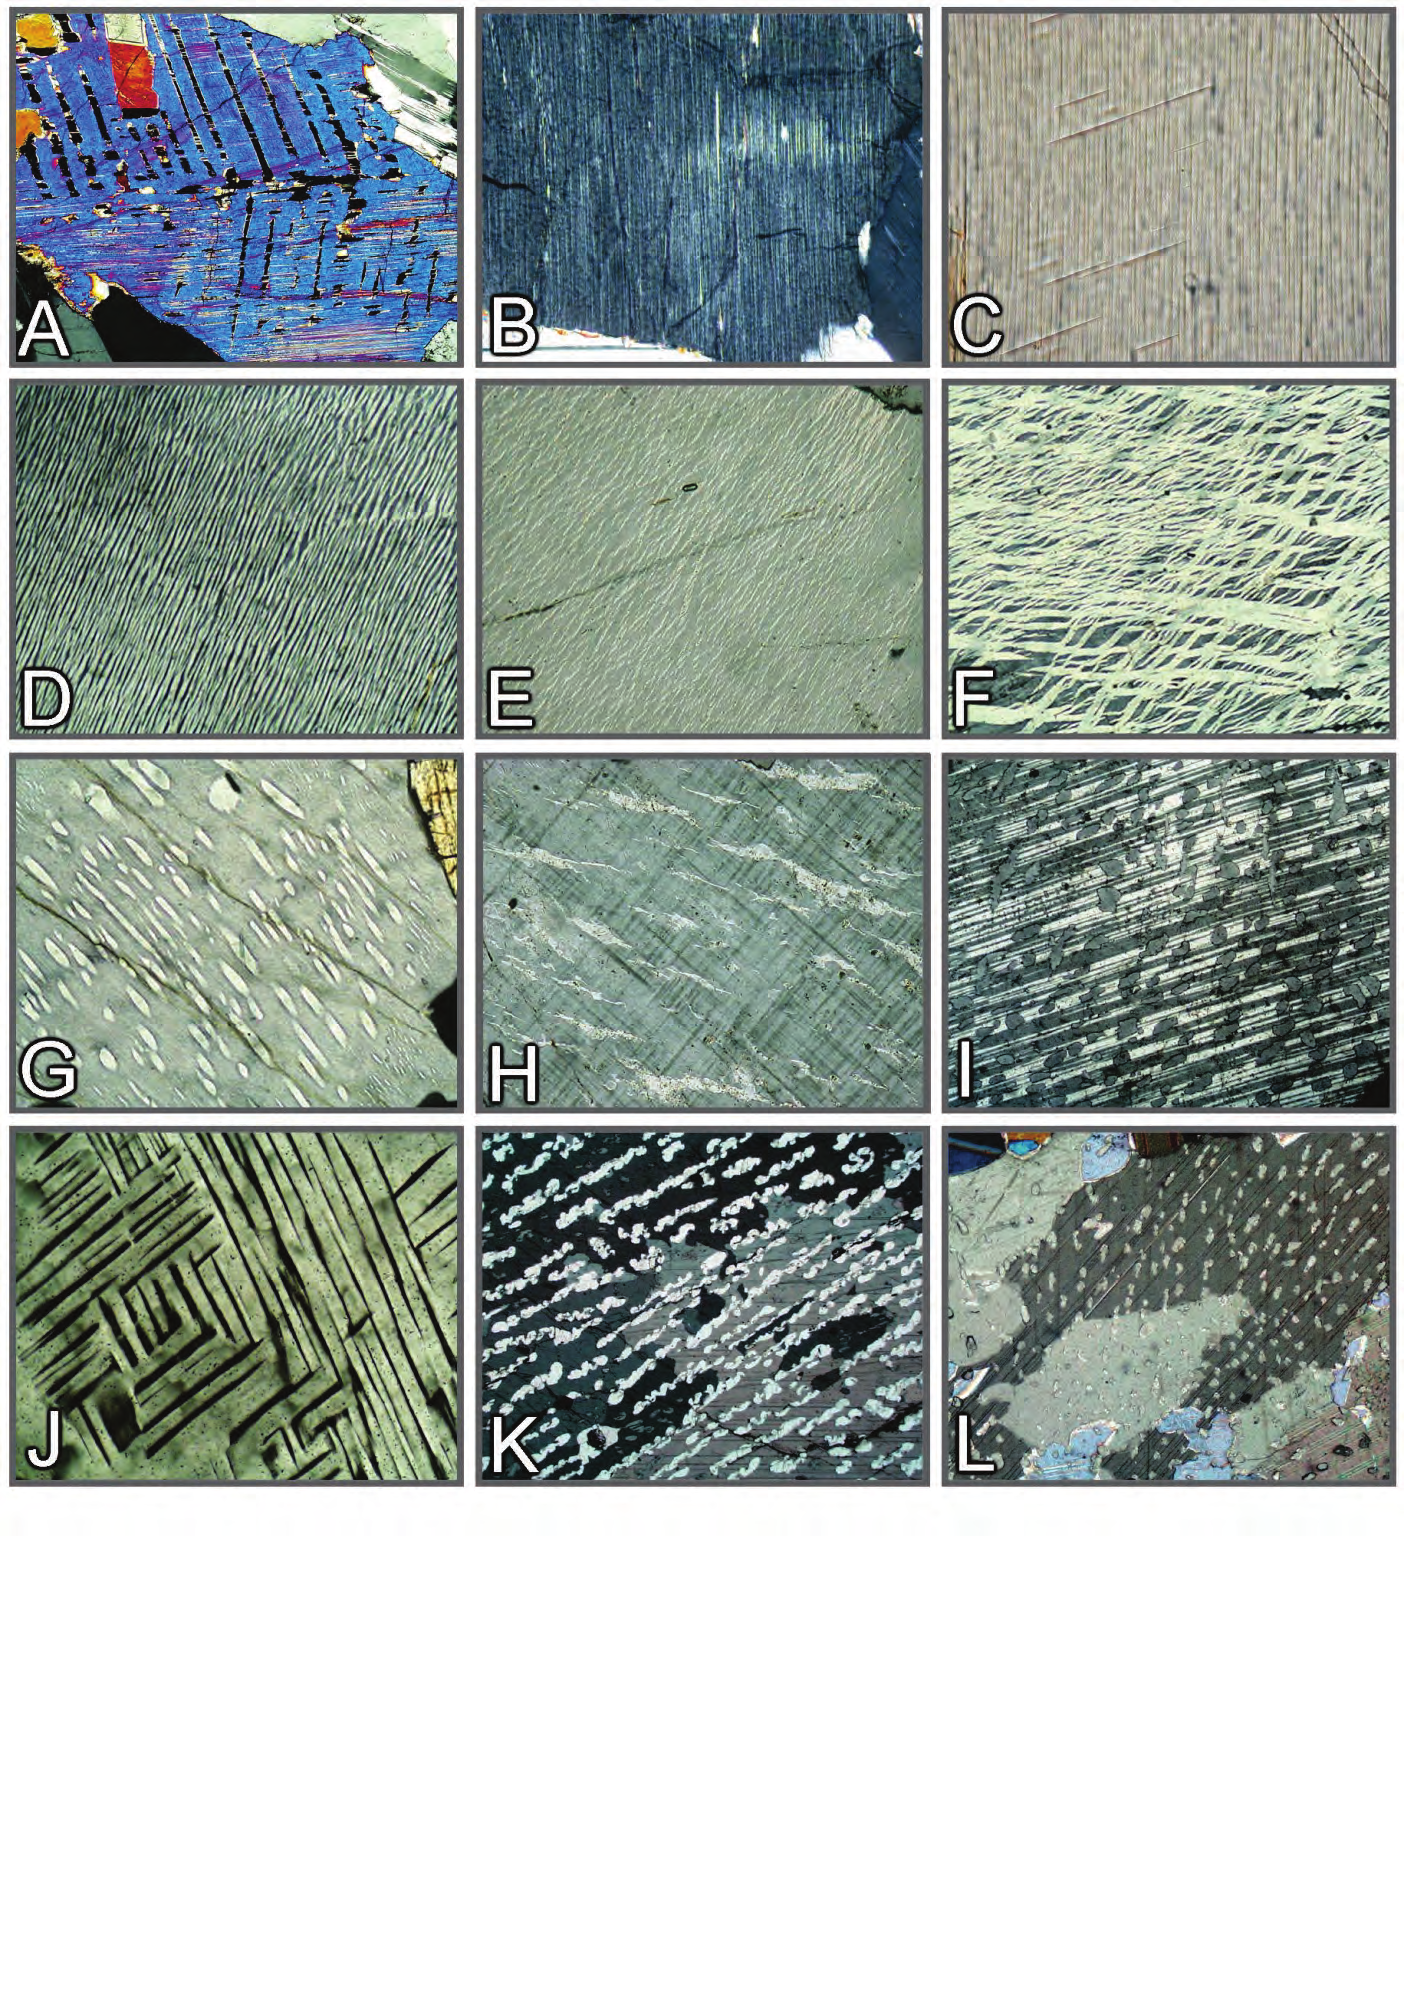 Propriedades morfológicas: texturas de exsolução Figura 3-24. Texturas de exsolução. A: Augita com macla segundo (100) e lamelas de exsolução de pigeonita segundo (001).